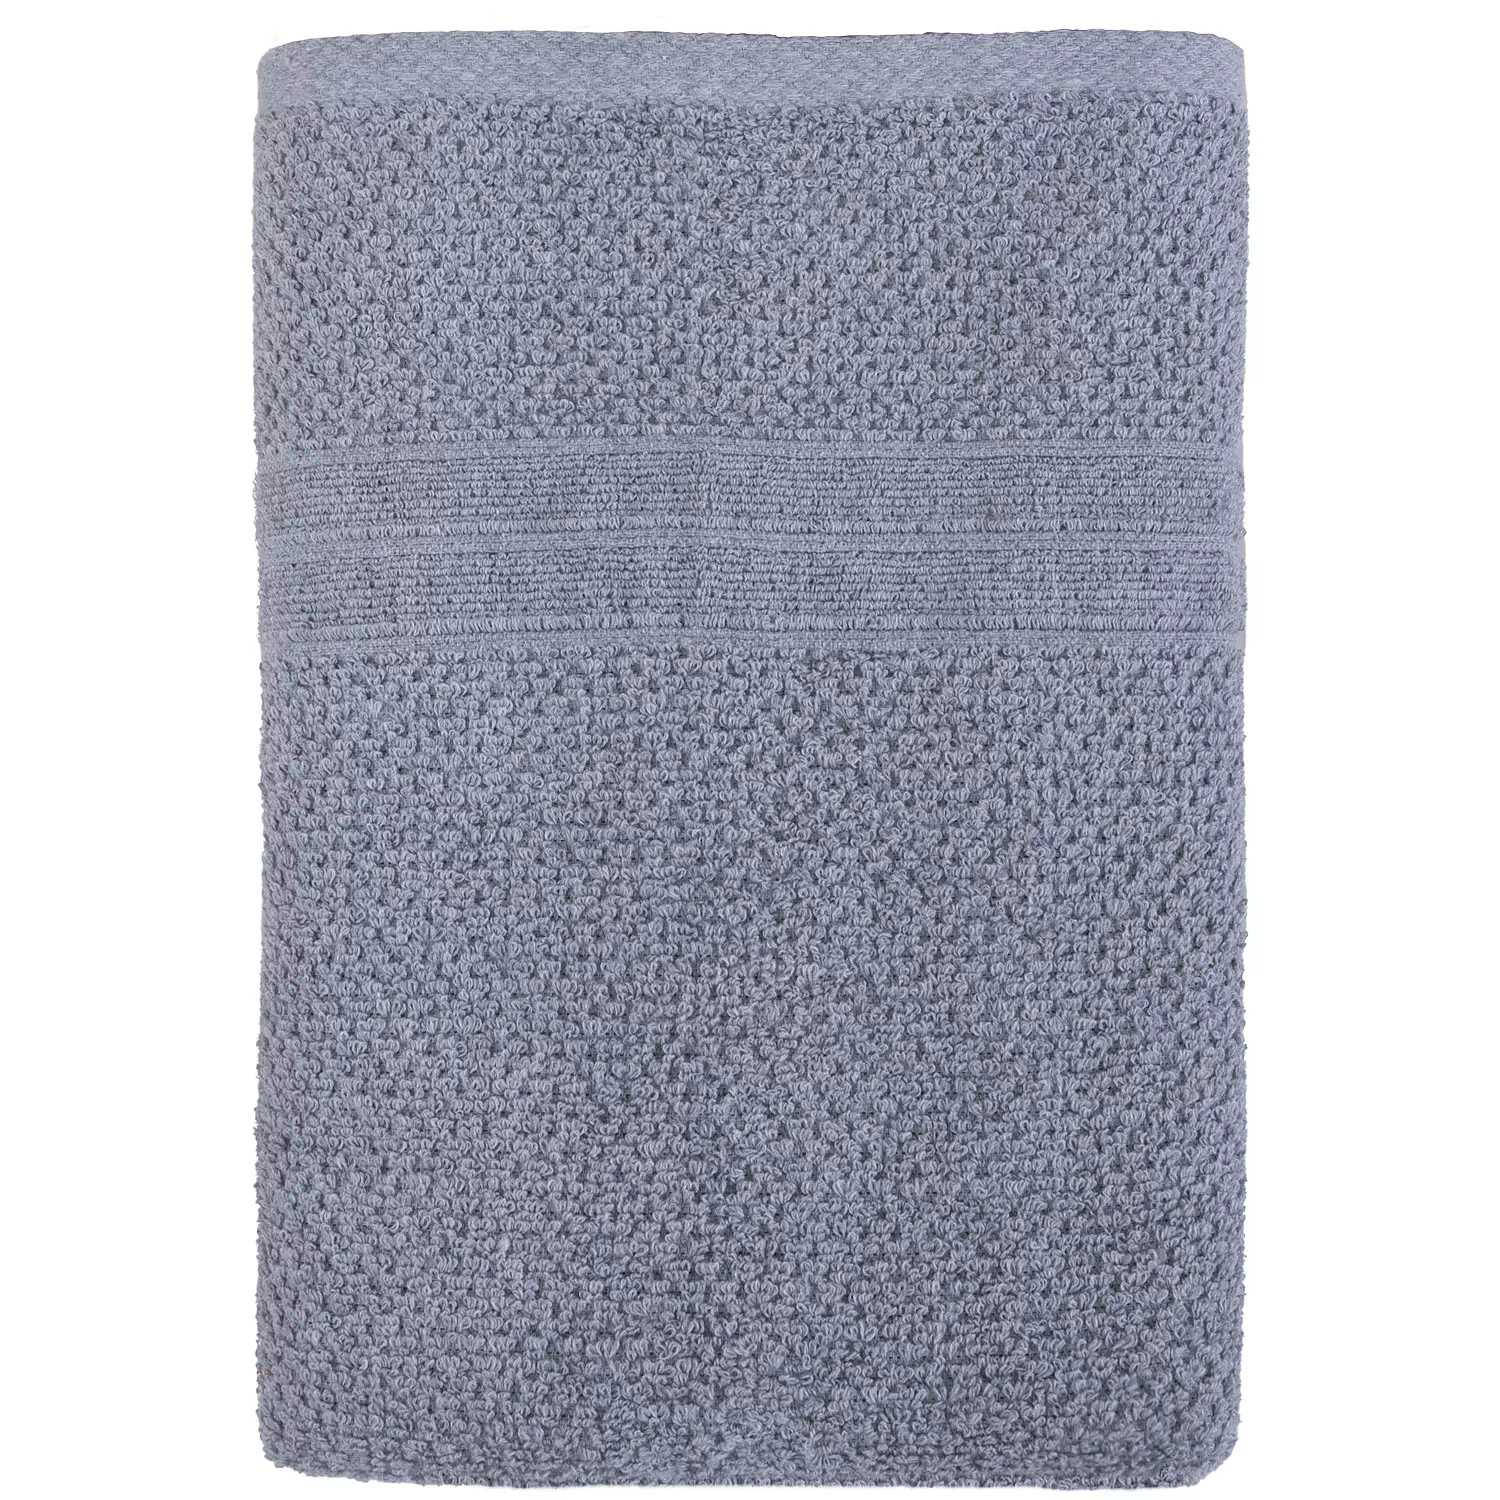 Bath towel, 25"x50", grey